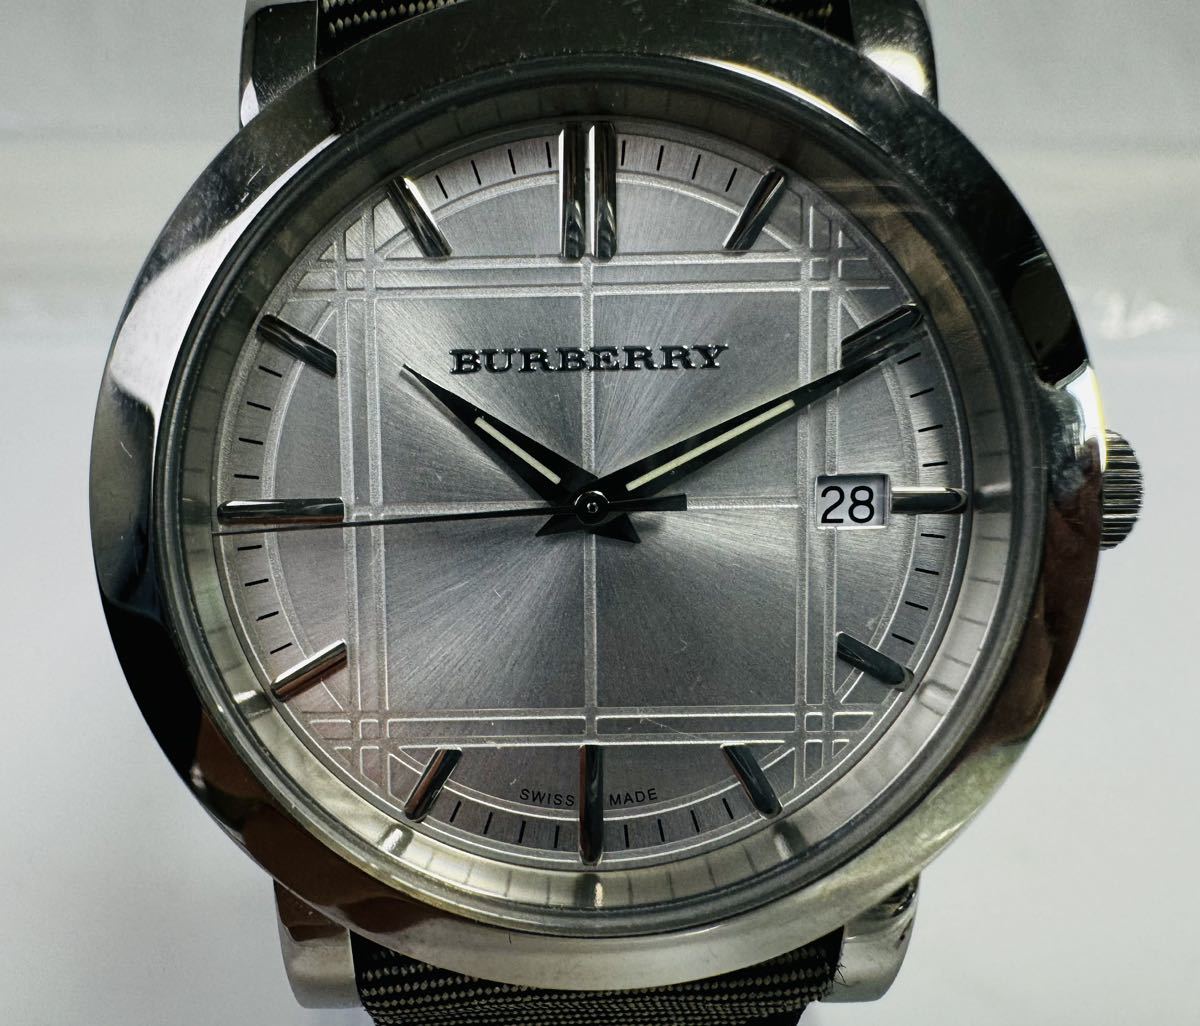 Ψ BURBERRY バーバリー 腕時計 メンズ BU1378 デイト チェック柄 ホワイト文字盤 メンズ腕時計箱・説明書付/255575/117-41_画像2